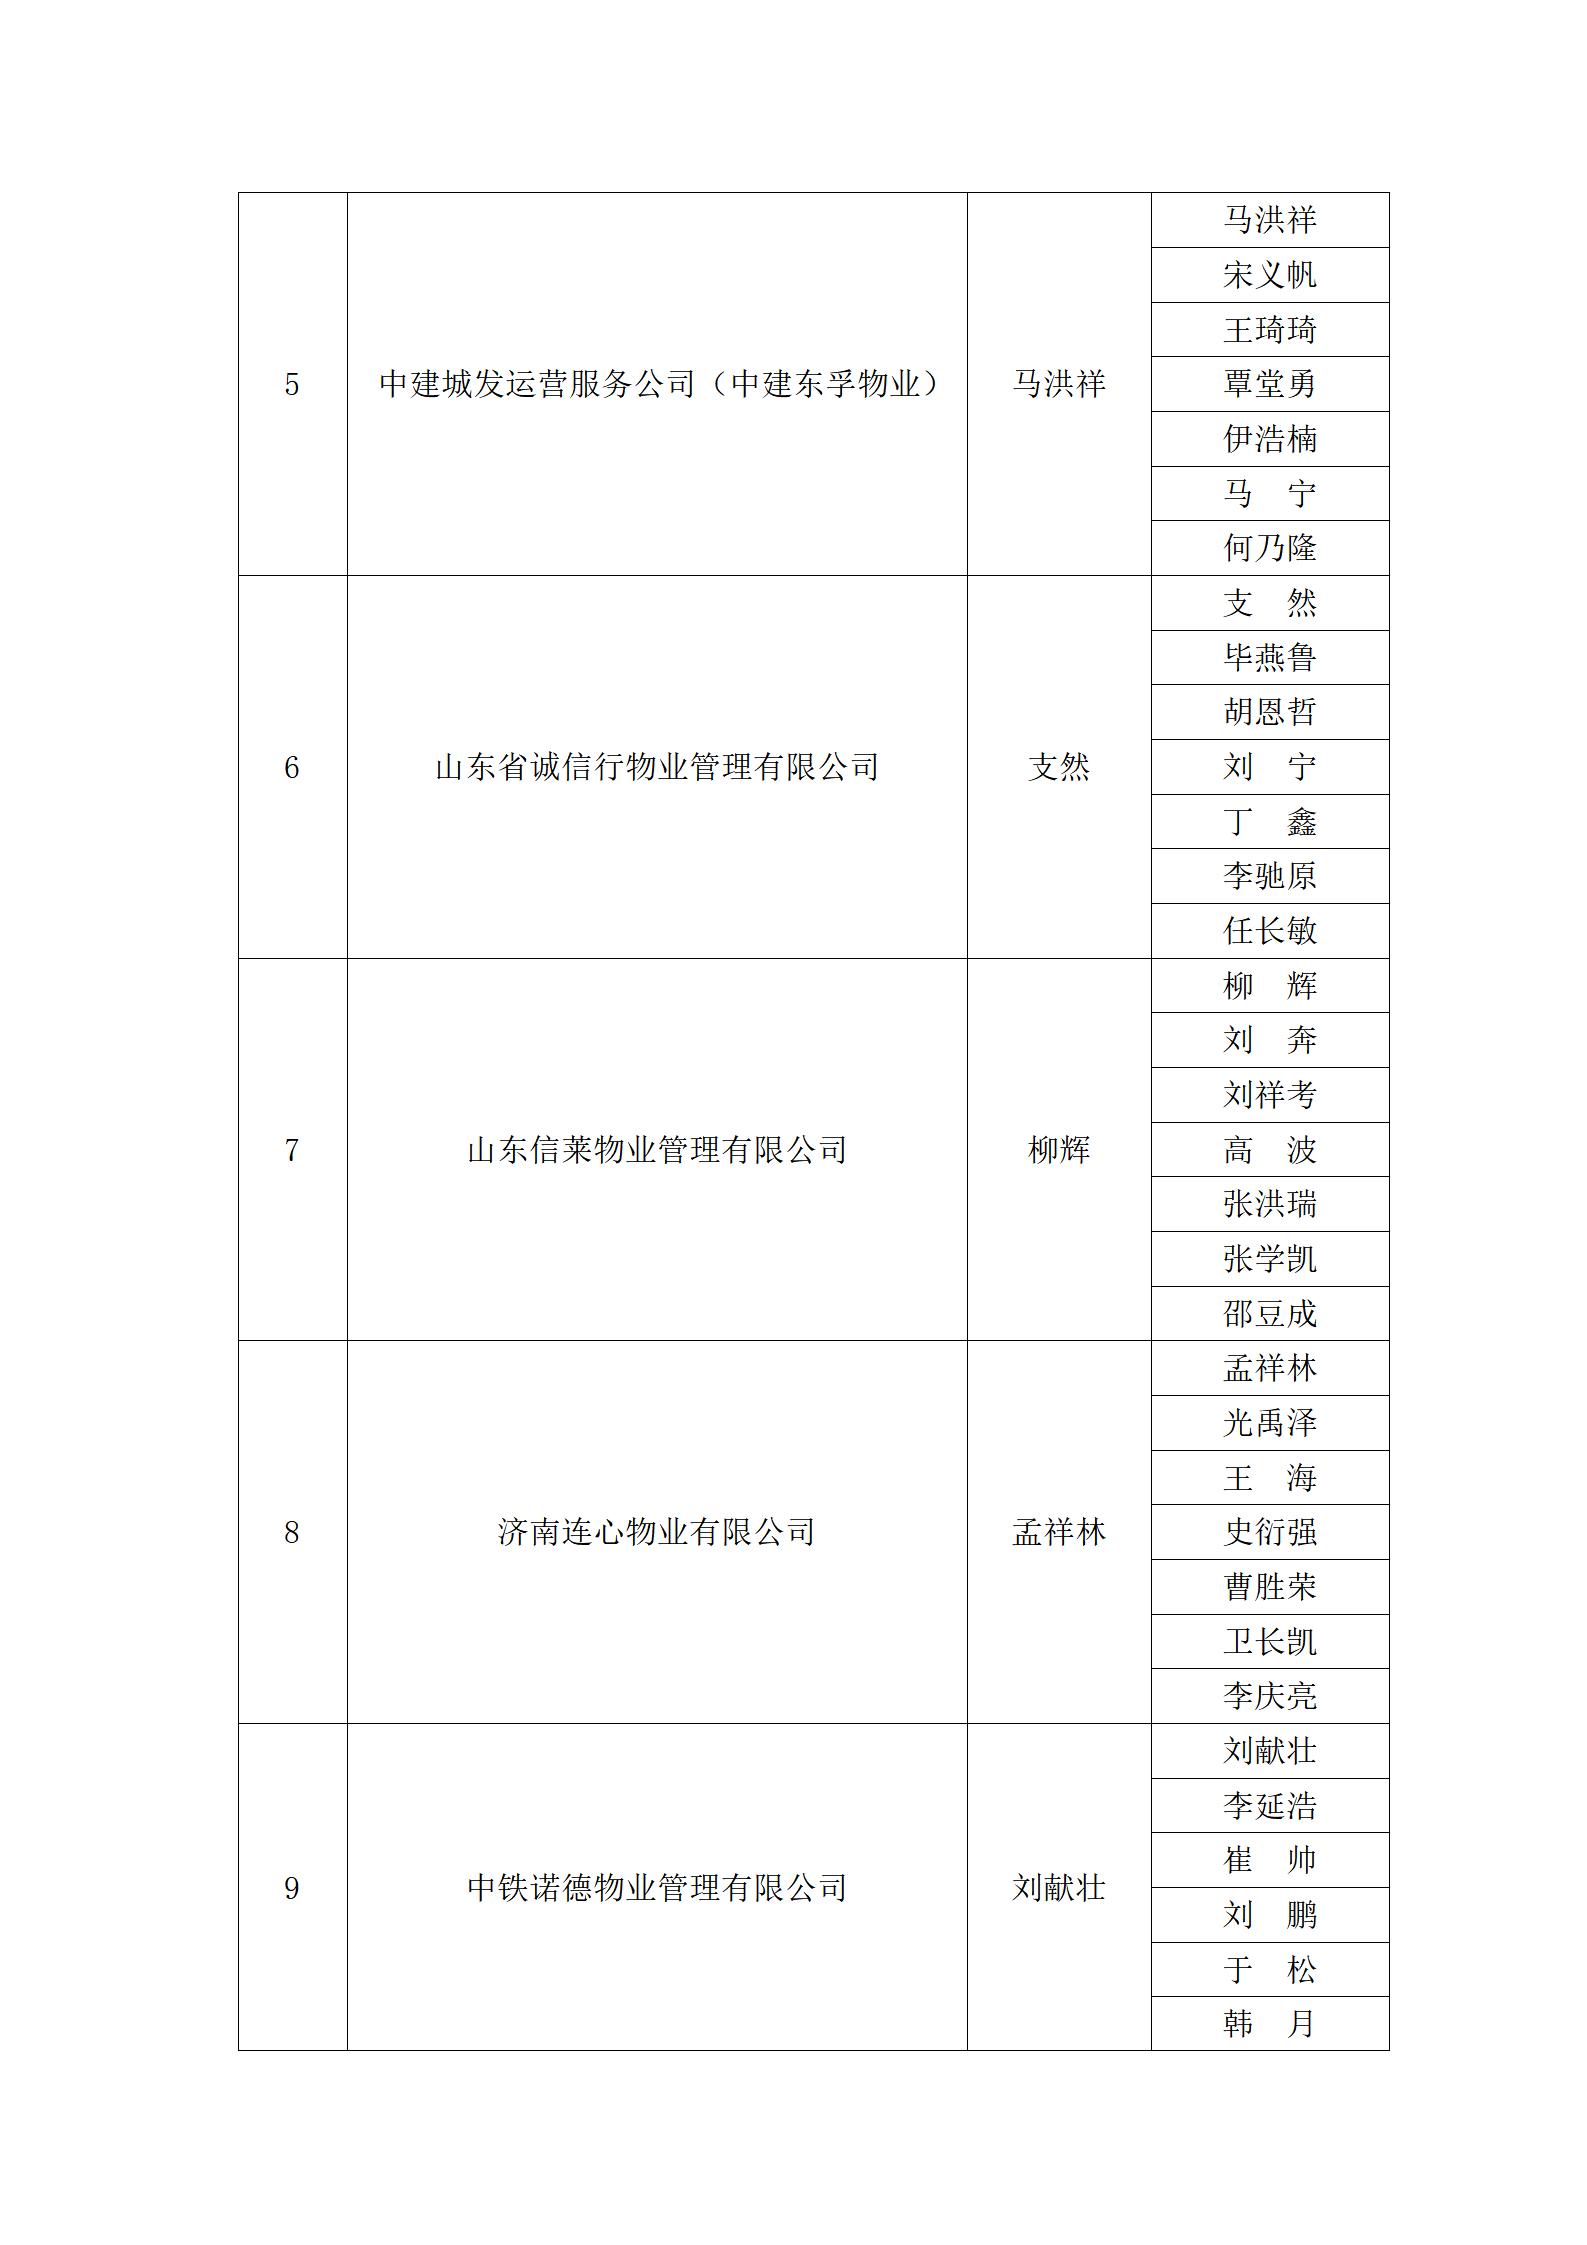 关于“明德杯”第六届济南市物业服务行业职业技能竞赛选手名单的公示_18